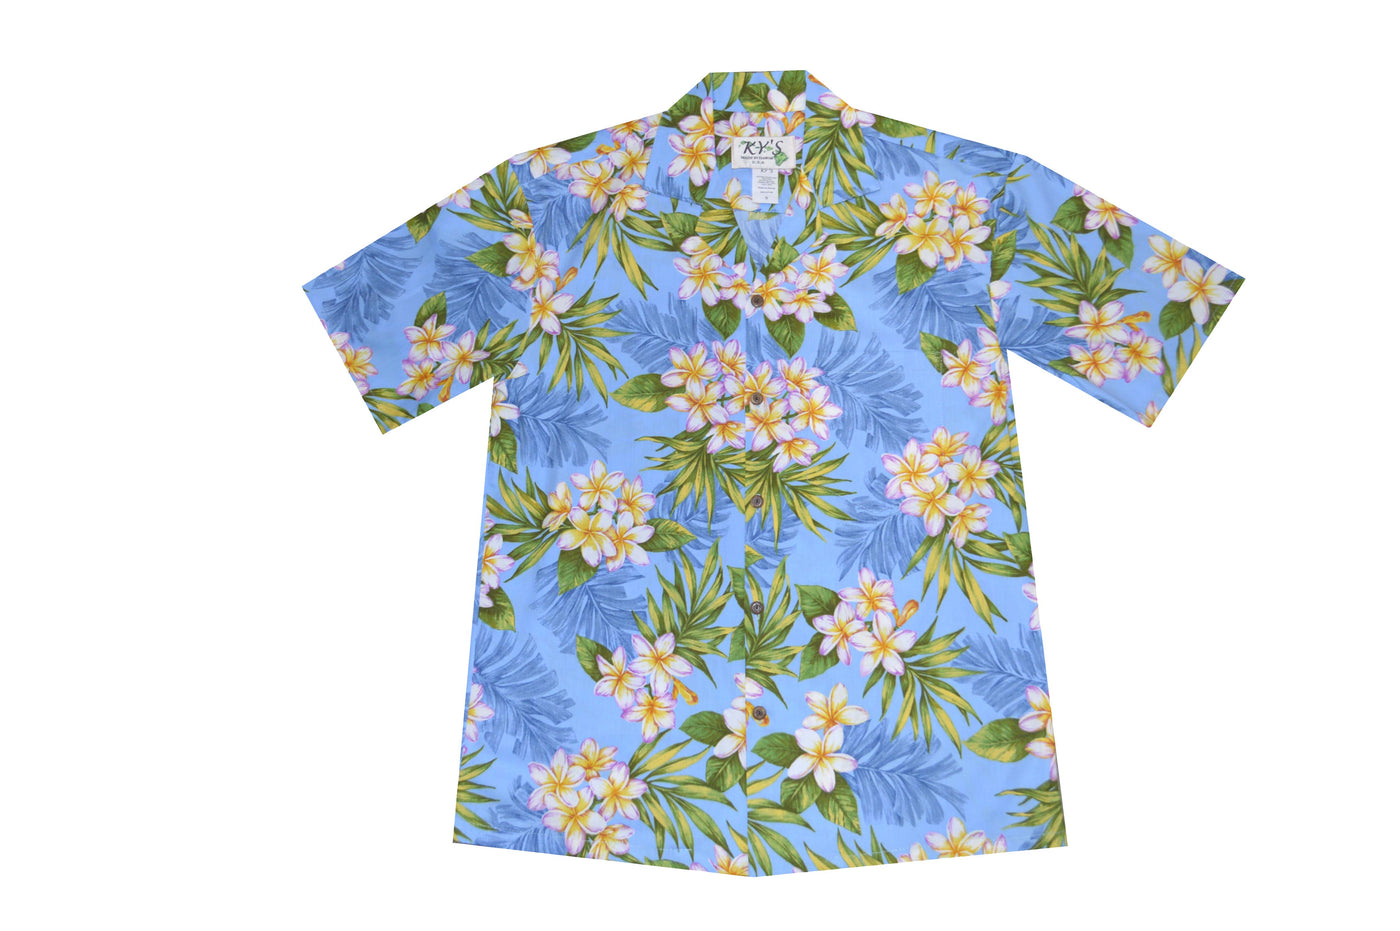 Plumeria Dream Men's Aloha Cotton Shirts